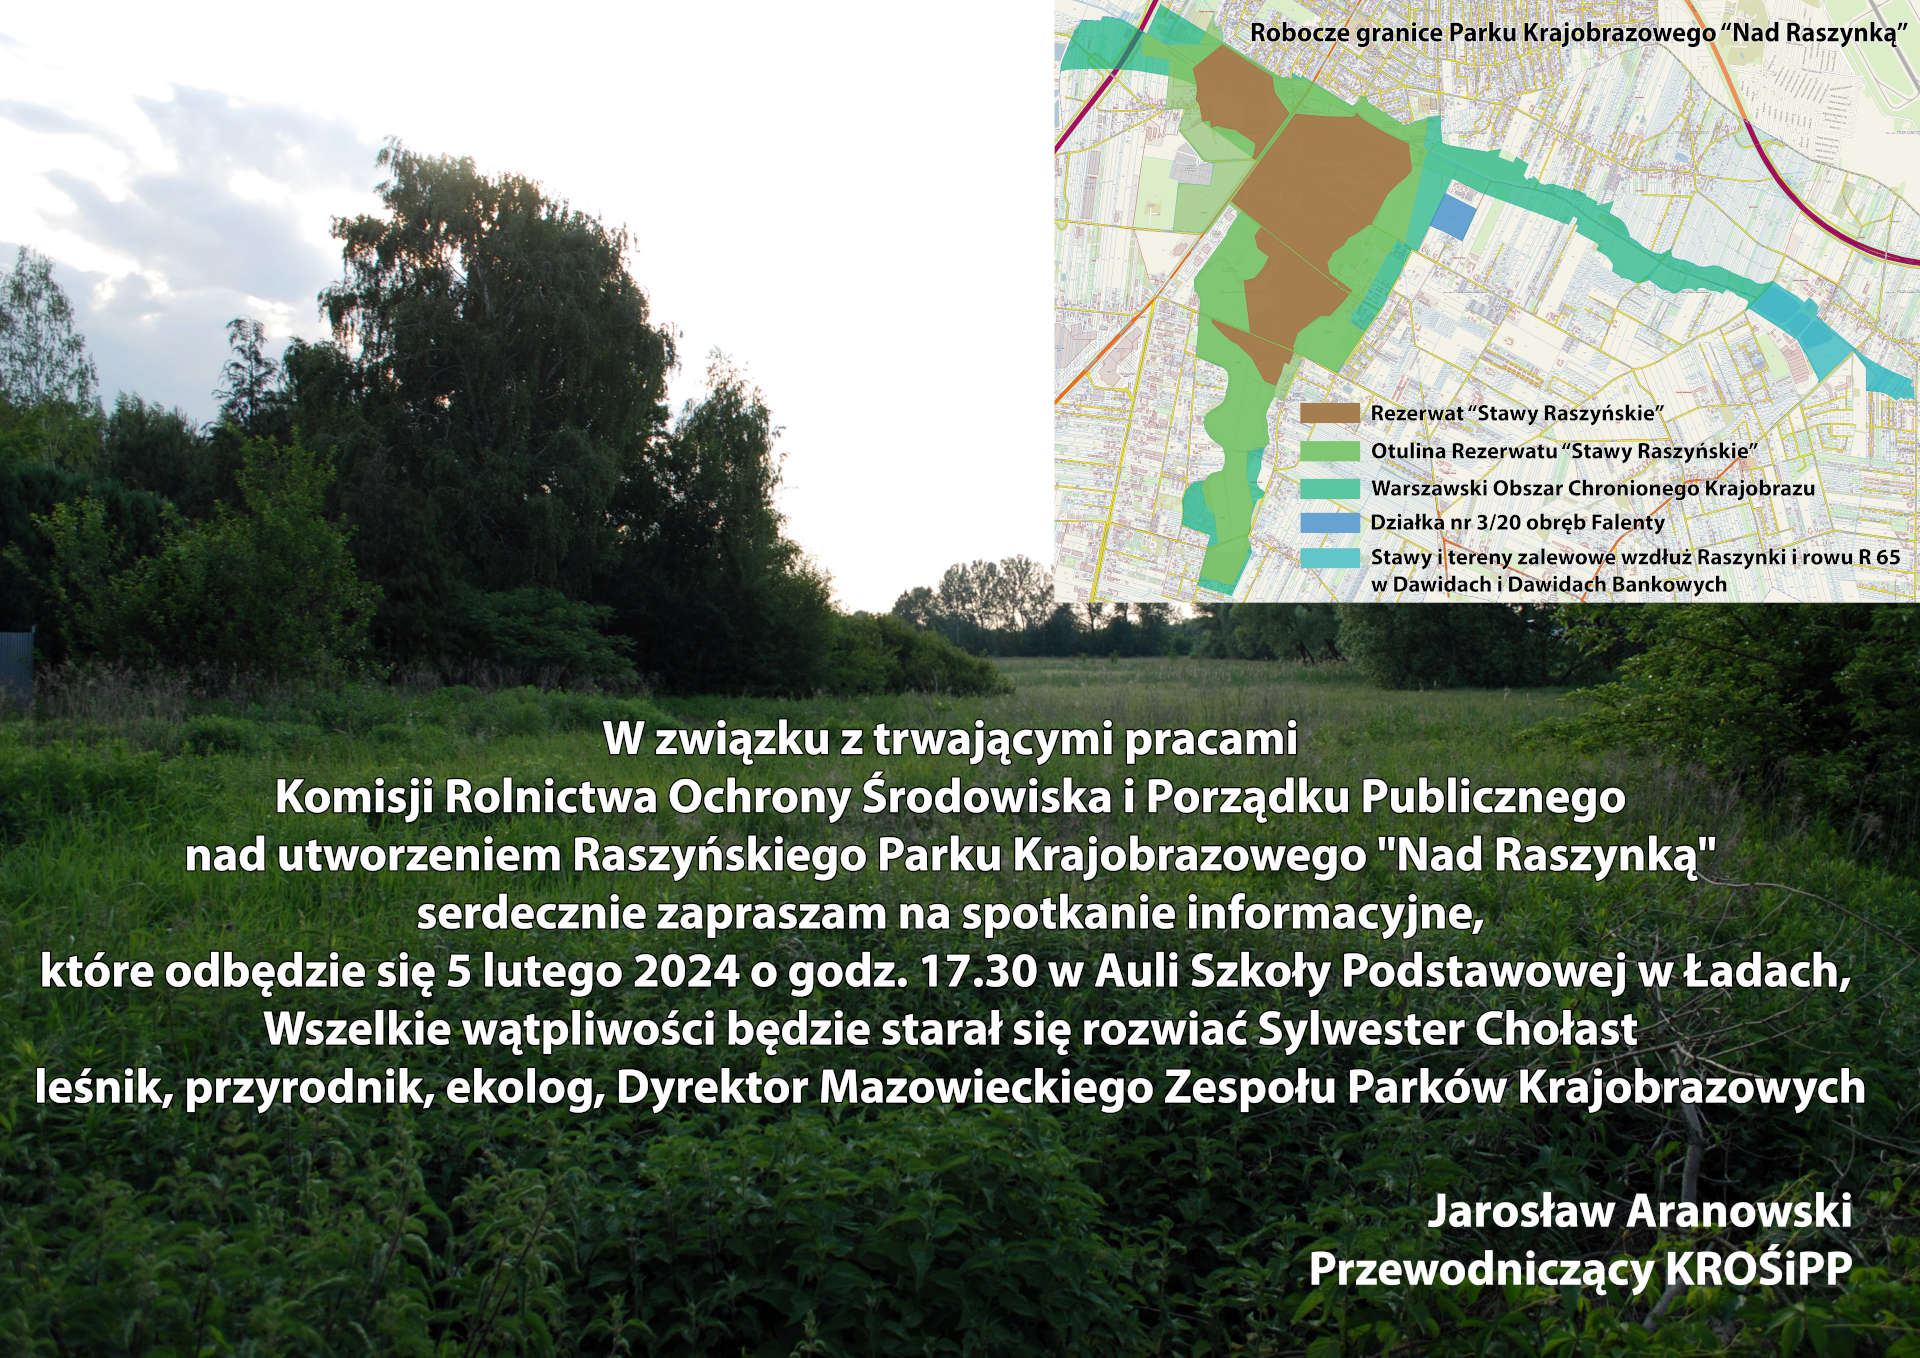 Plakat: utworzenie Raszyńskiego Parku Krajobrazowego "Nad Raszynką"